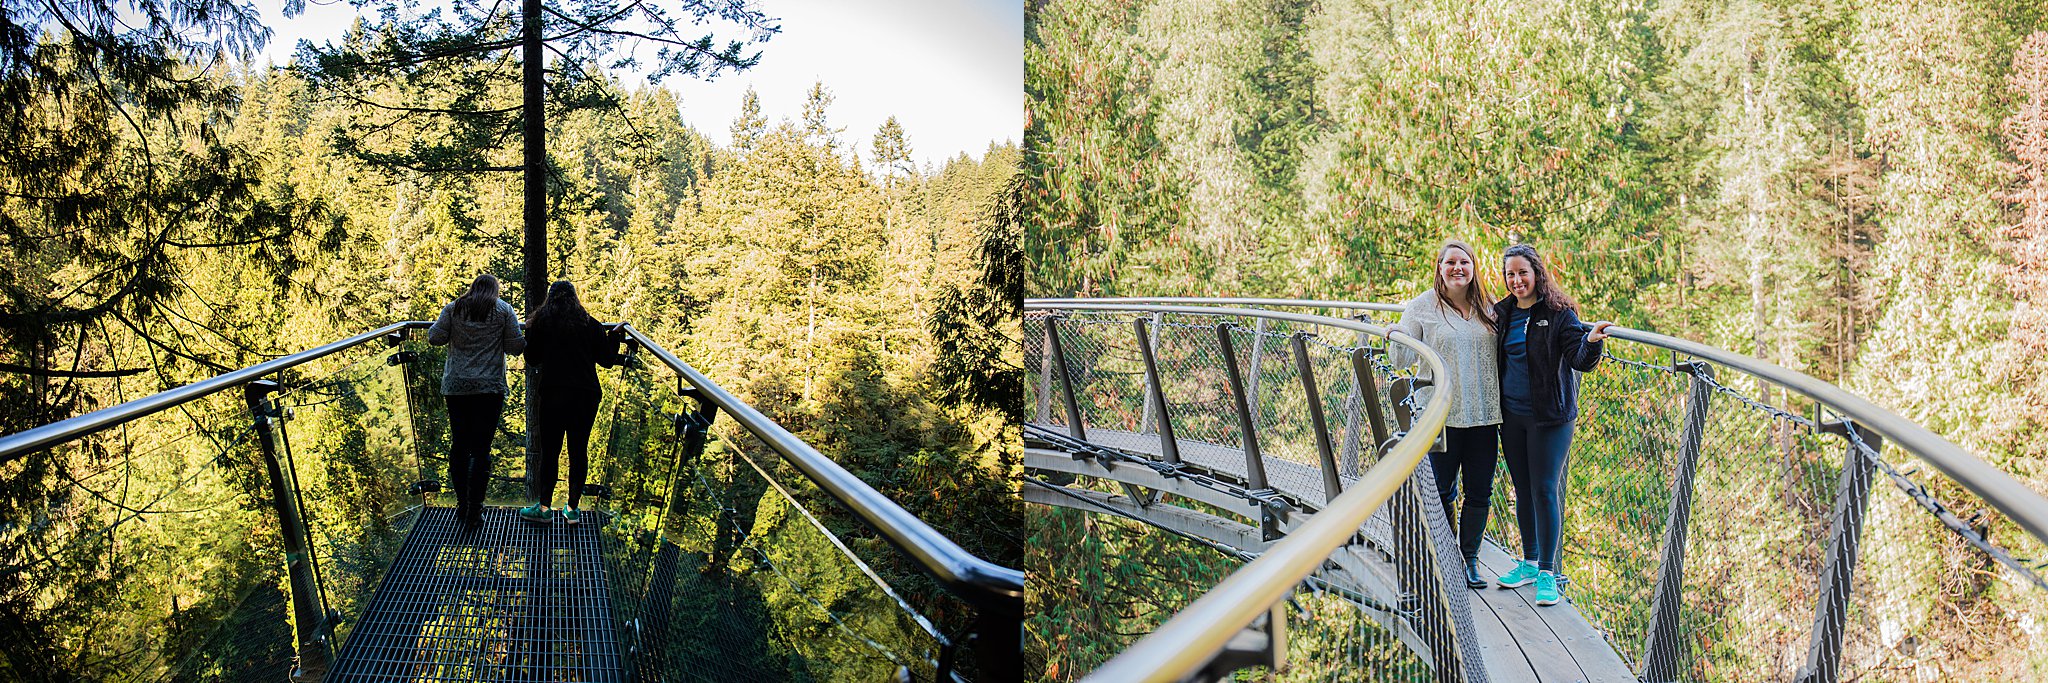 capilano suspension bridge, vancouver, things to do in vancouver, suspension bridge, cliffwalk, treetops adventure, visit british columbia, canada